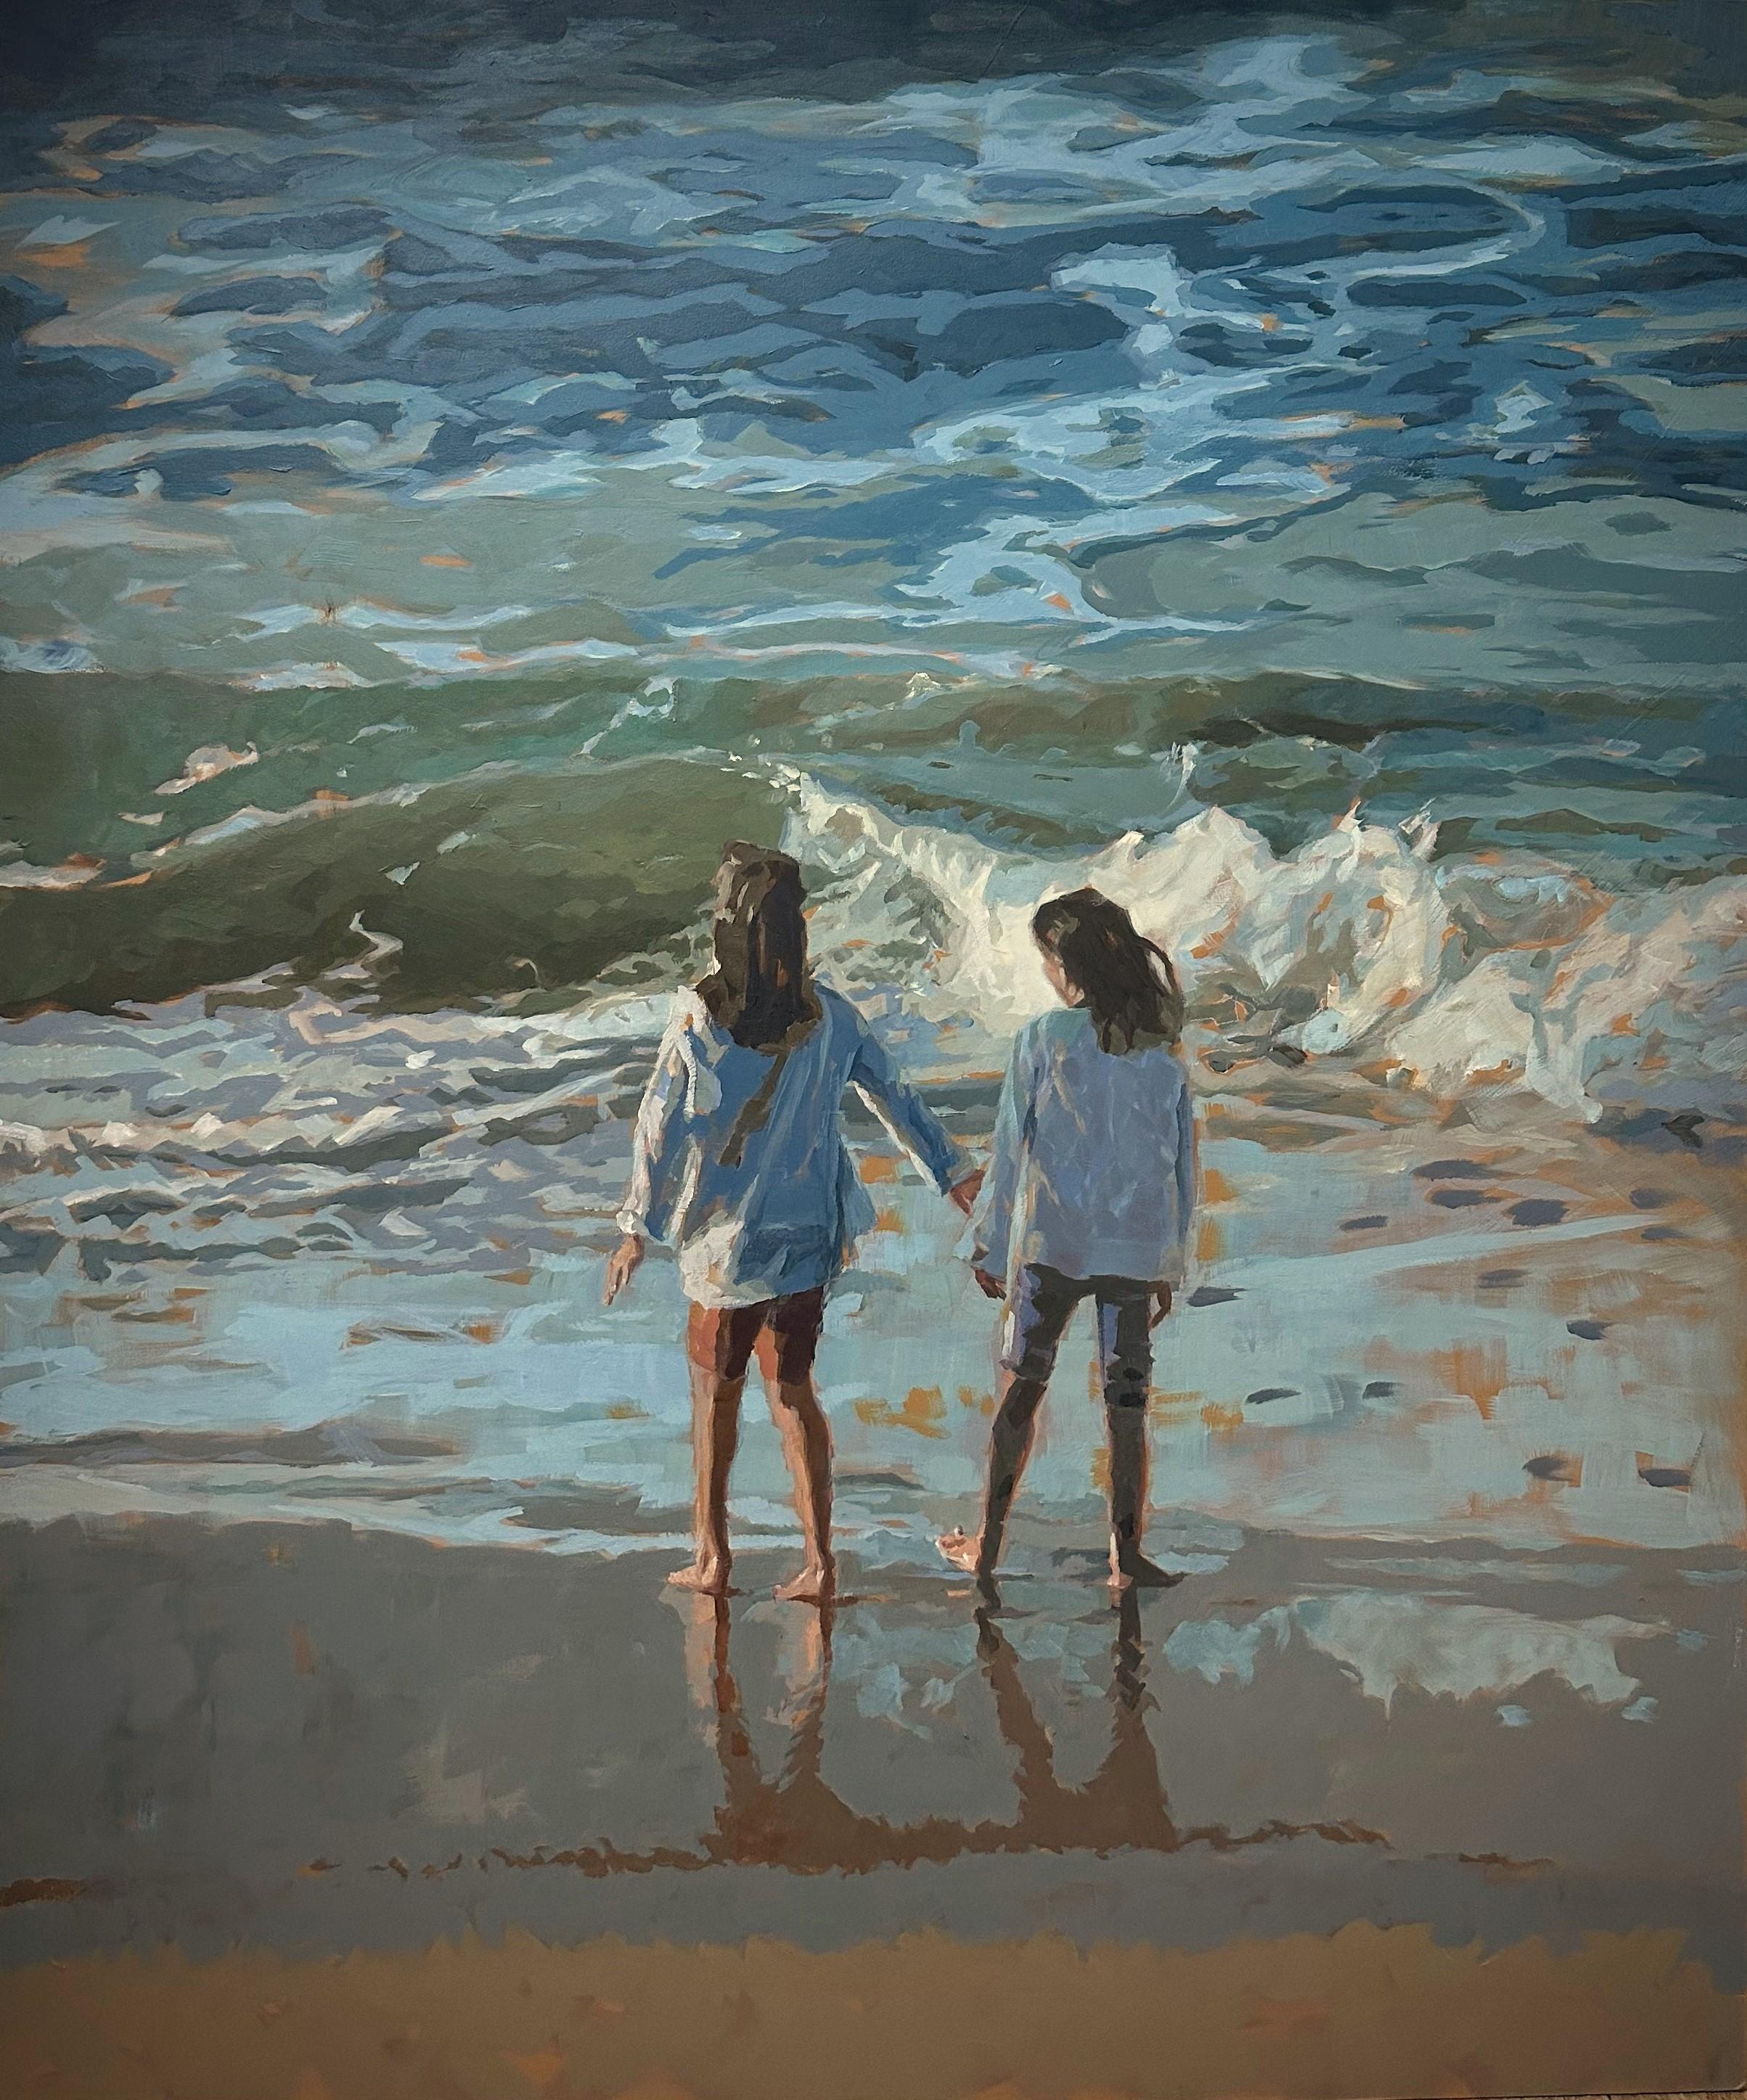 Mitzy Renooy Figurative Painting – The Sea- 21st Century Contemporary Painting von zwei am Strand stehenden Mädchen